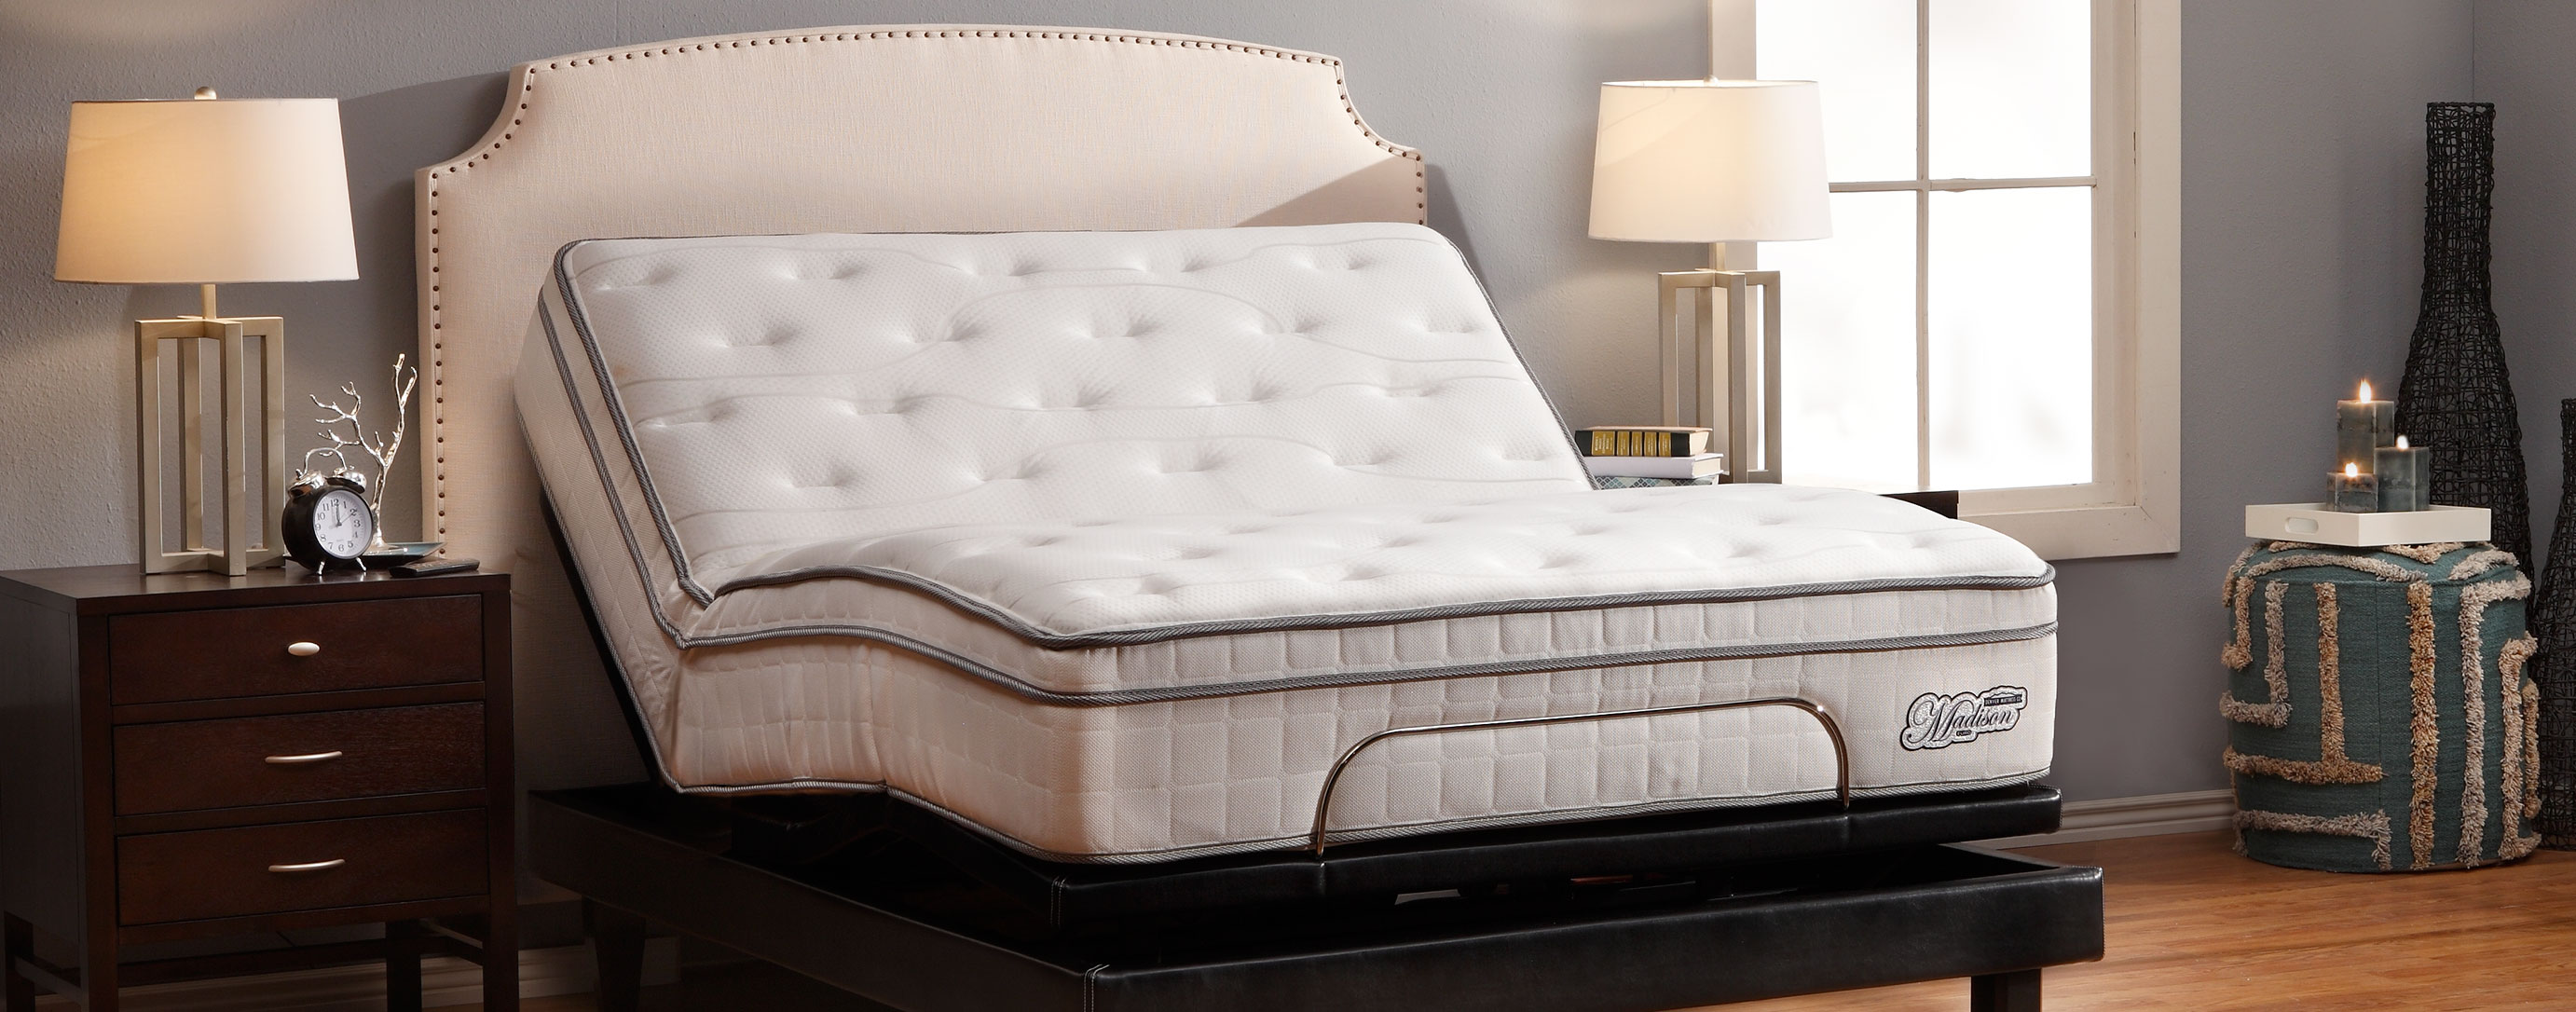 denver mattress bed frame